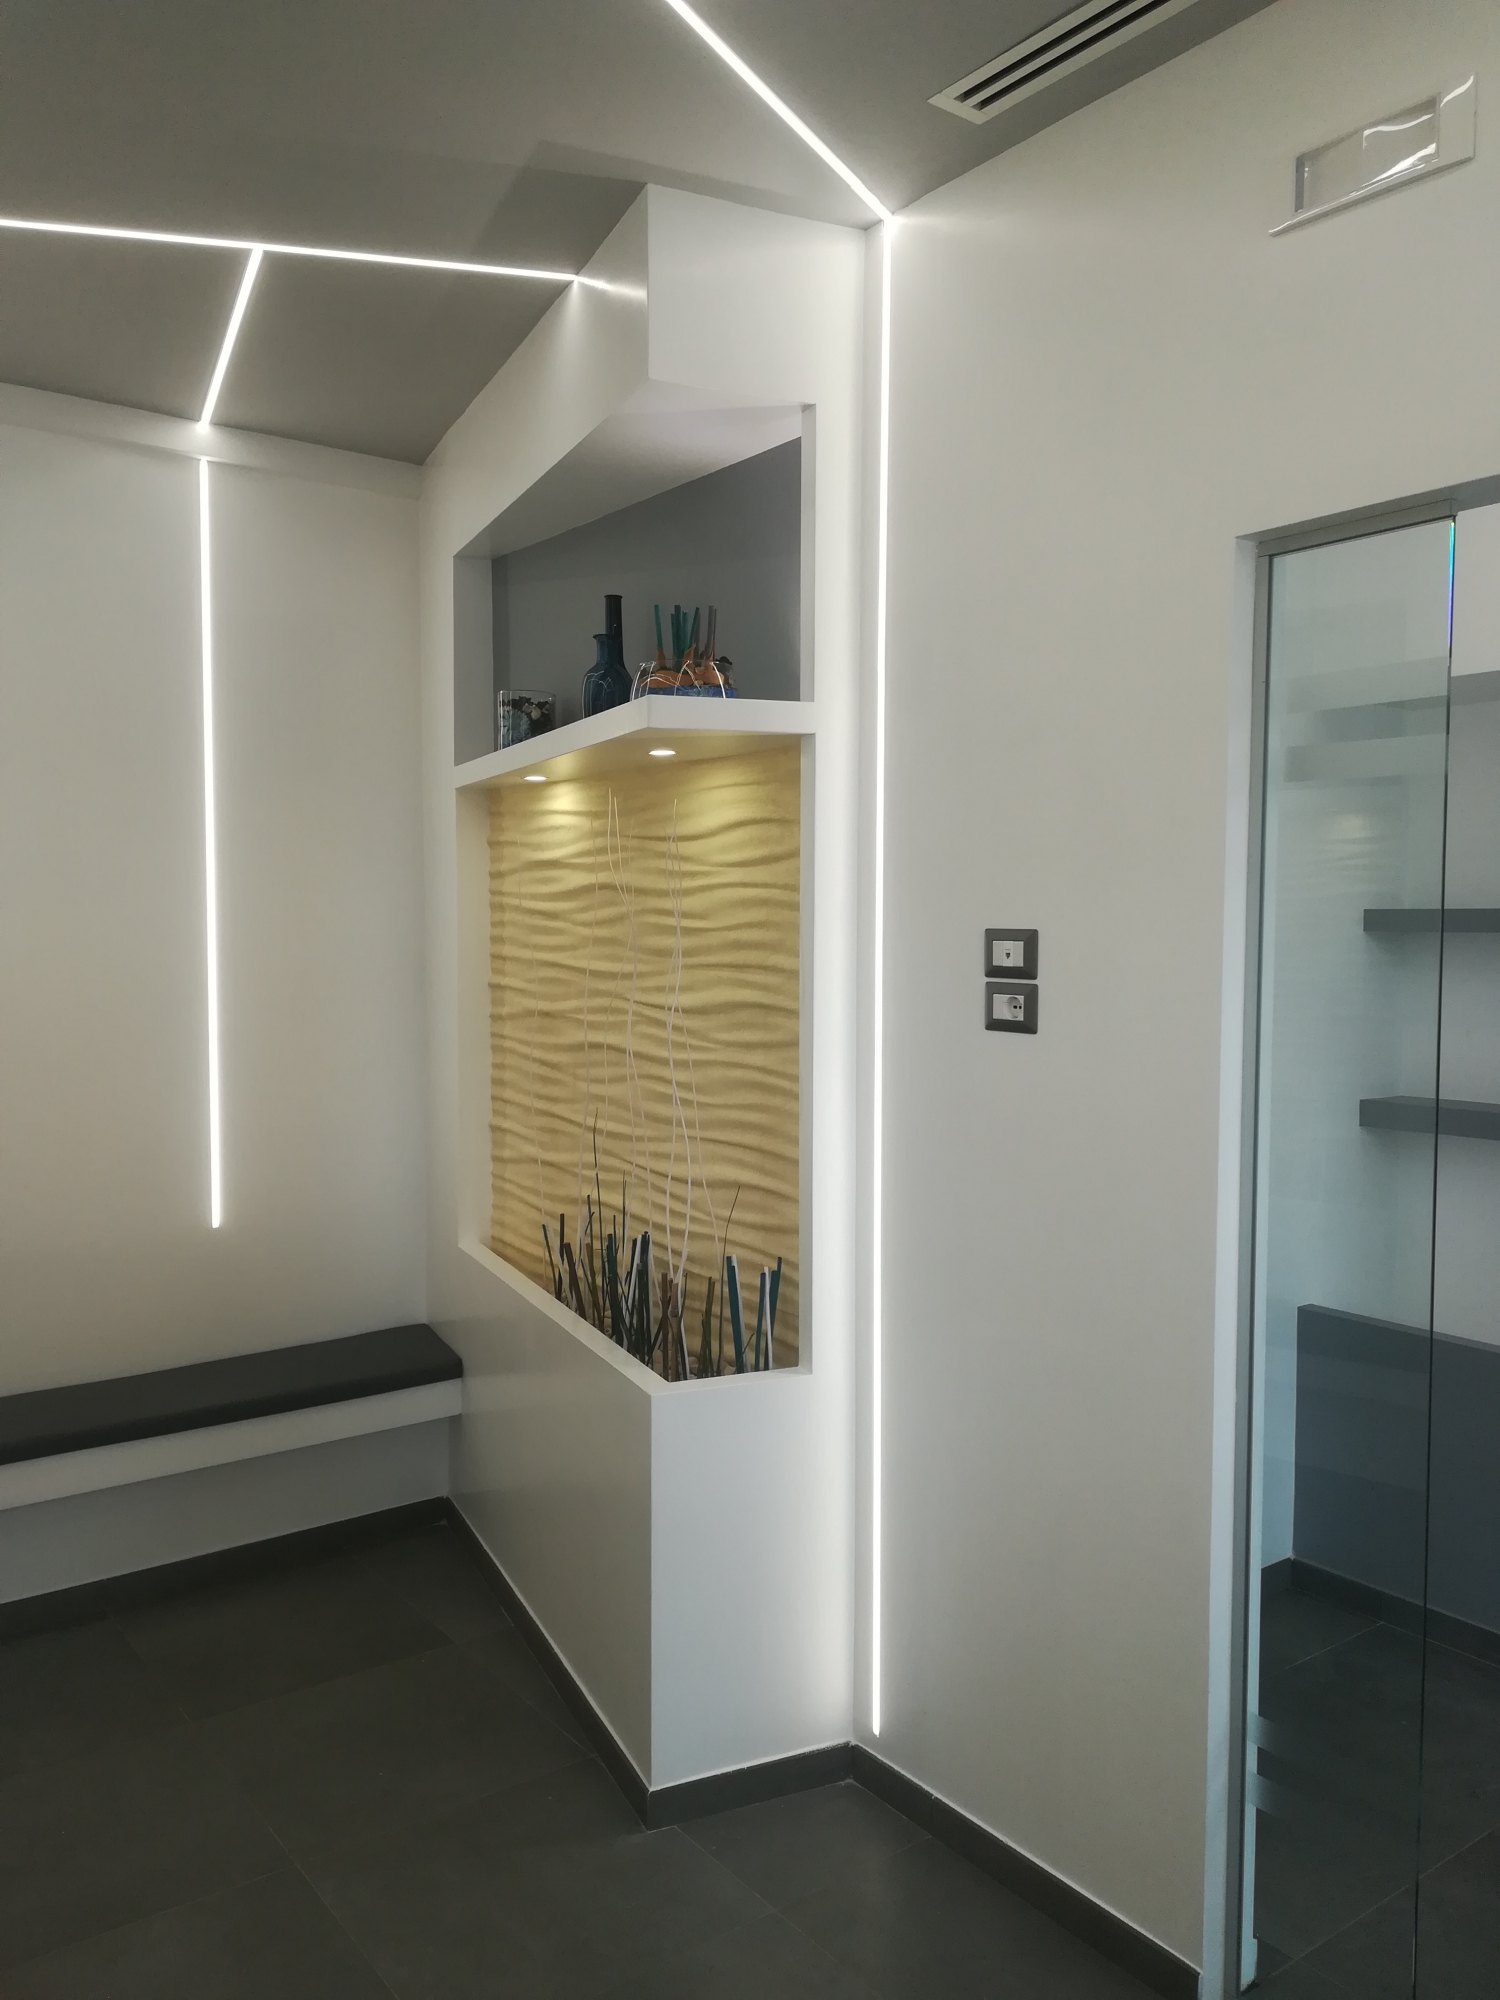 Sala d'attesa - studio odontoiatrico progetto - Architetto - Led - soffitto in cartongesso